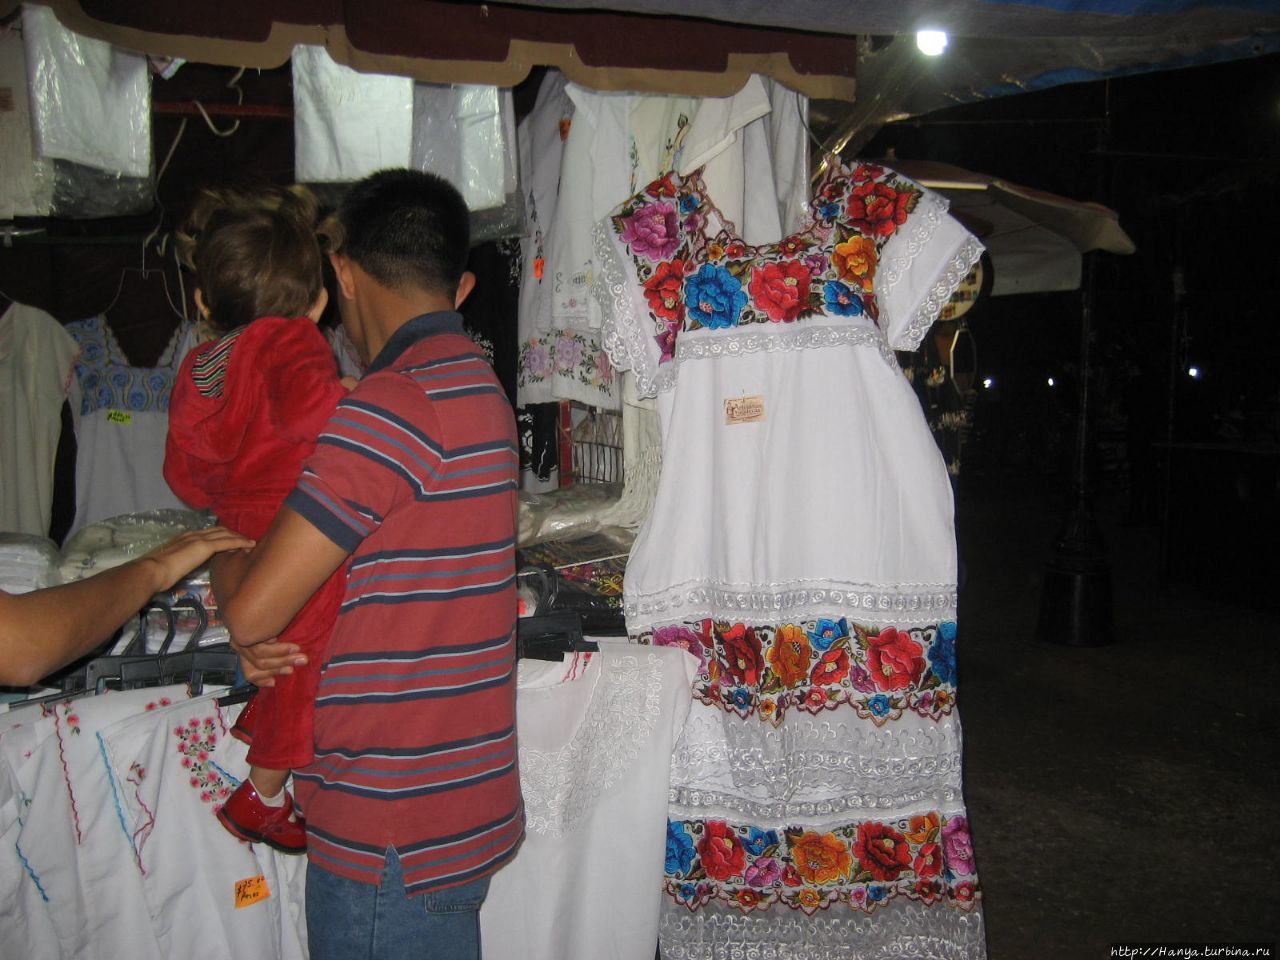 Праздники Мериды Мерида, Мексика